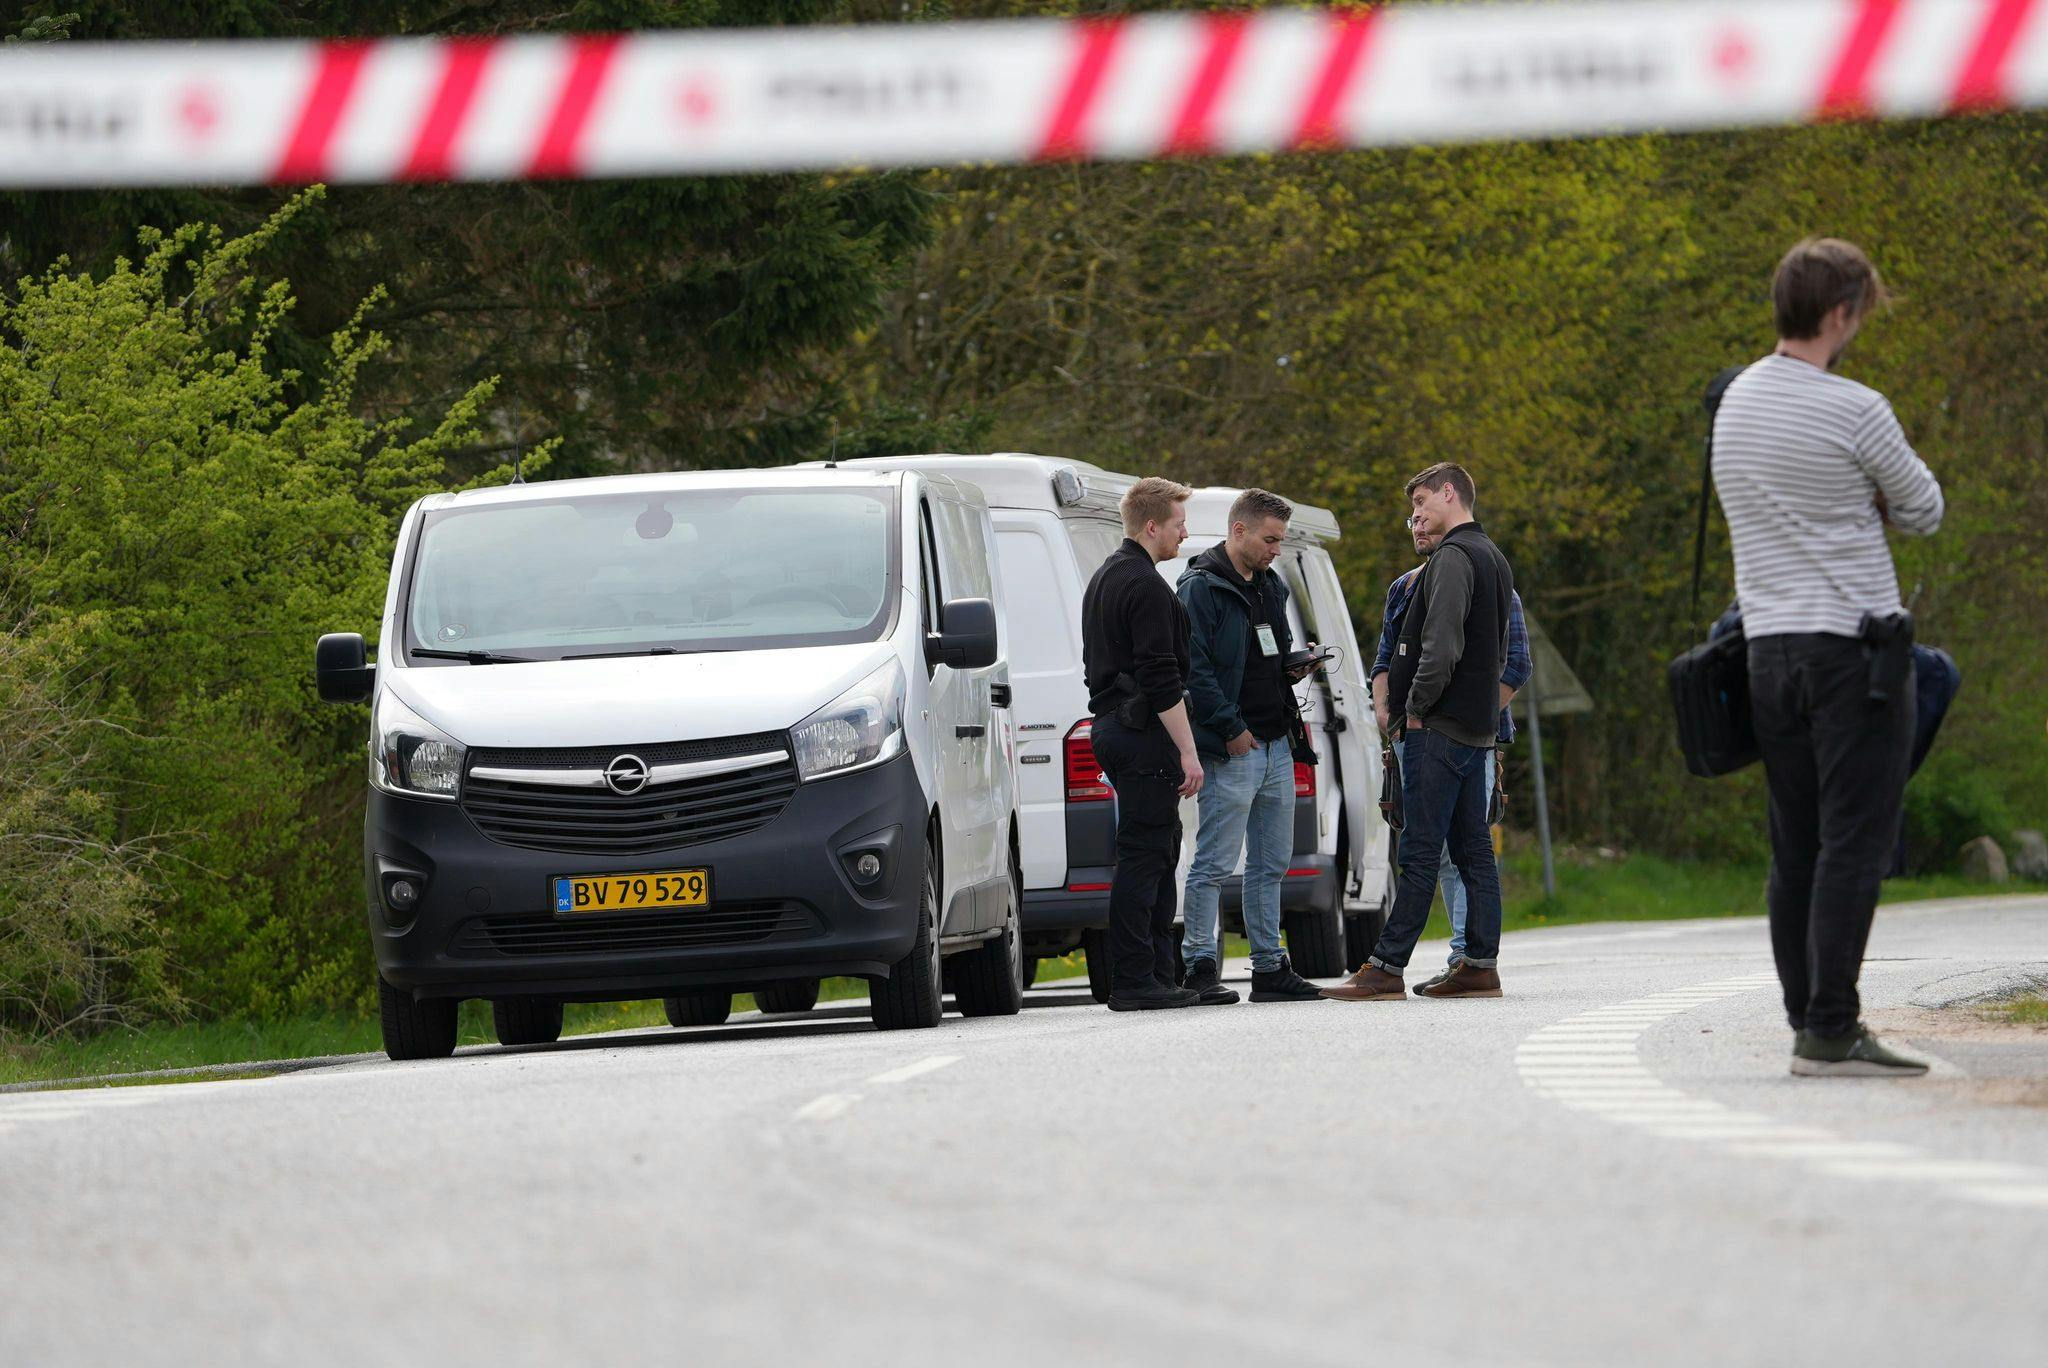 Politiet og deres efterforskere arbejder fortsat på den adresse i Hvirring ved Horsens, hvor der søndag blev fundet en afdød 44-årig mand - de mistænker, at der ligger en forbrydelse bag dødsfaldet.